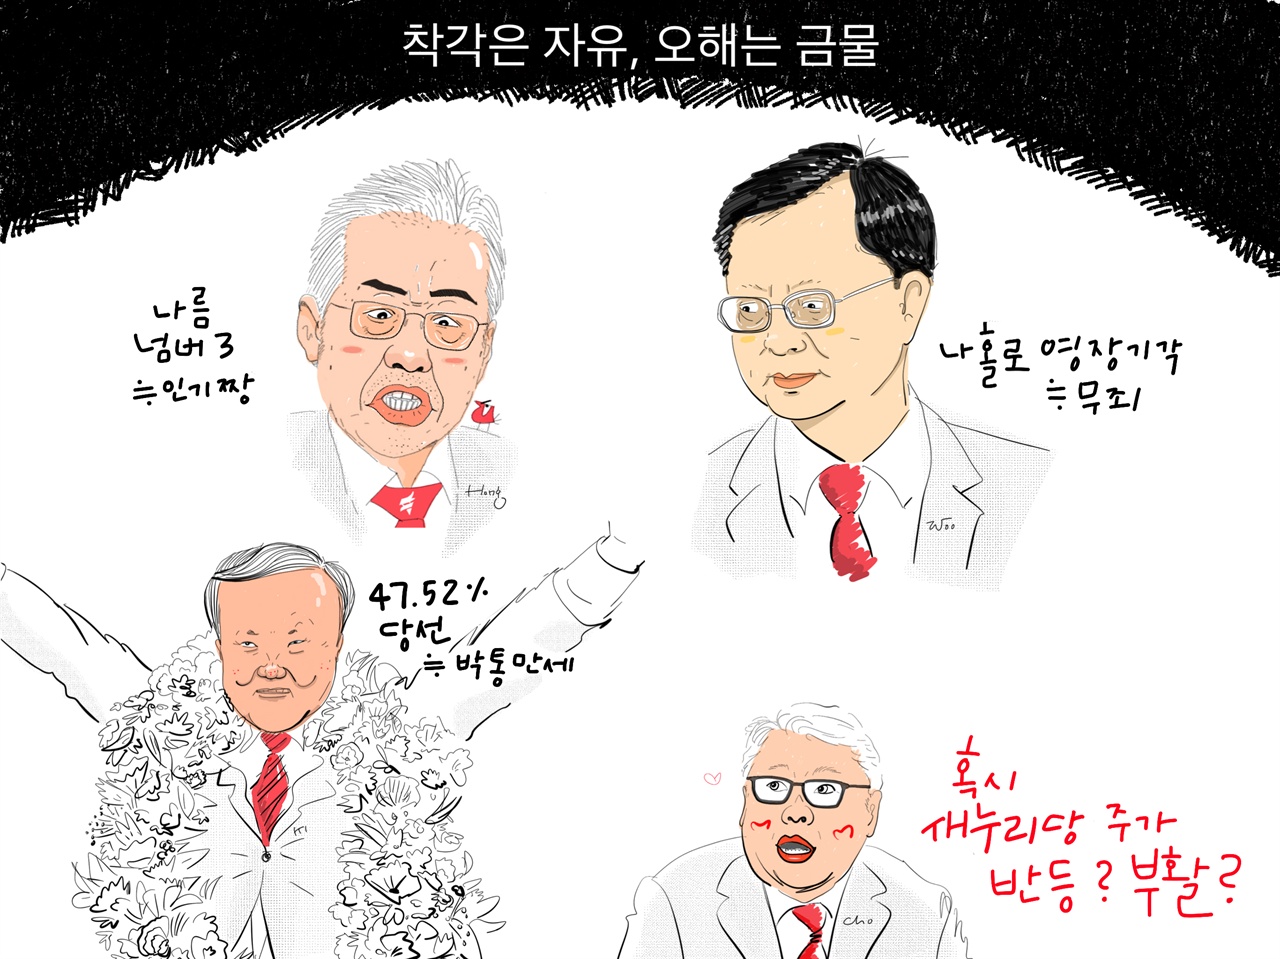  경북 상주·군위·의성·청송 지역 국회의원 재선거에서 당선된 '친박의원' 김재원 의원